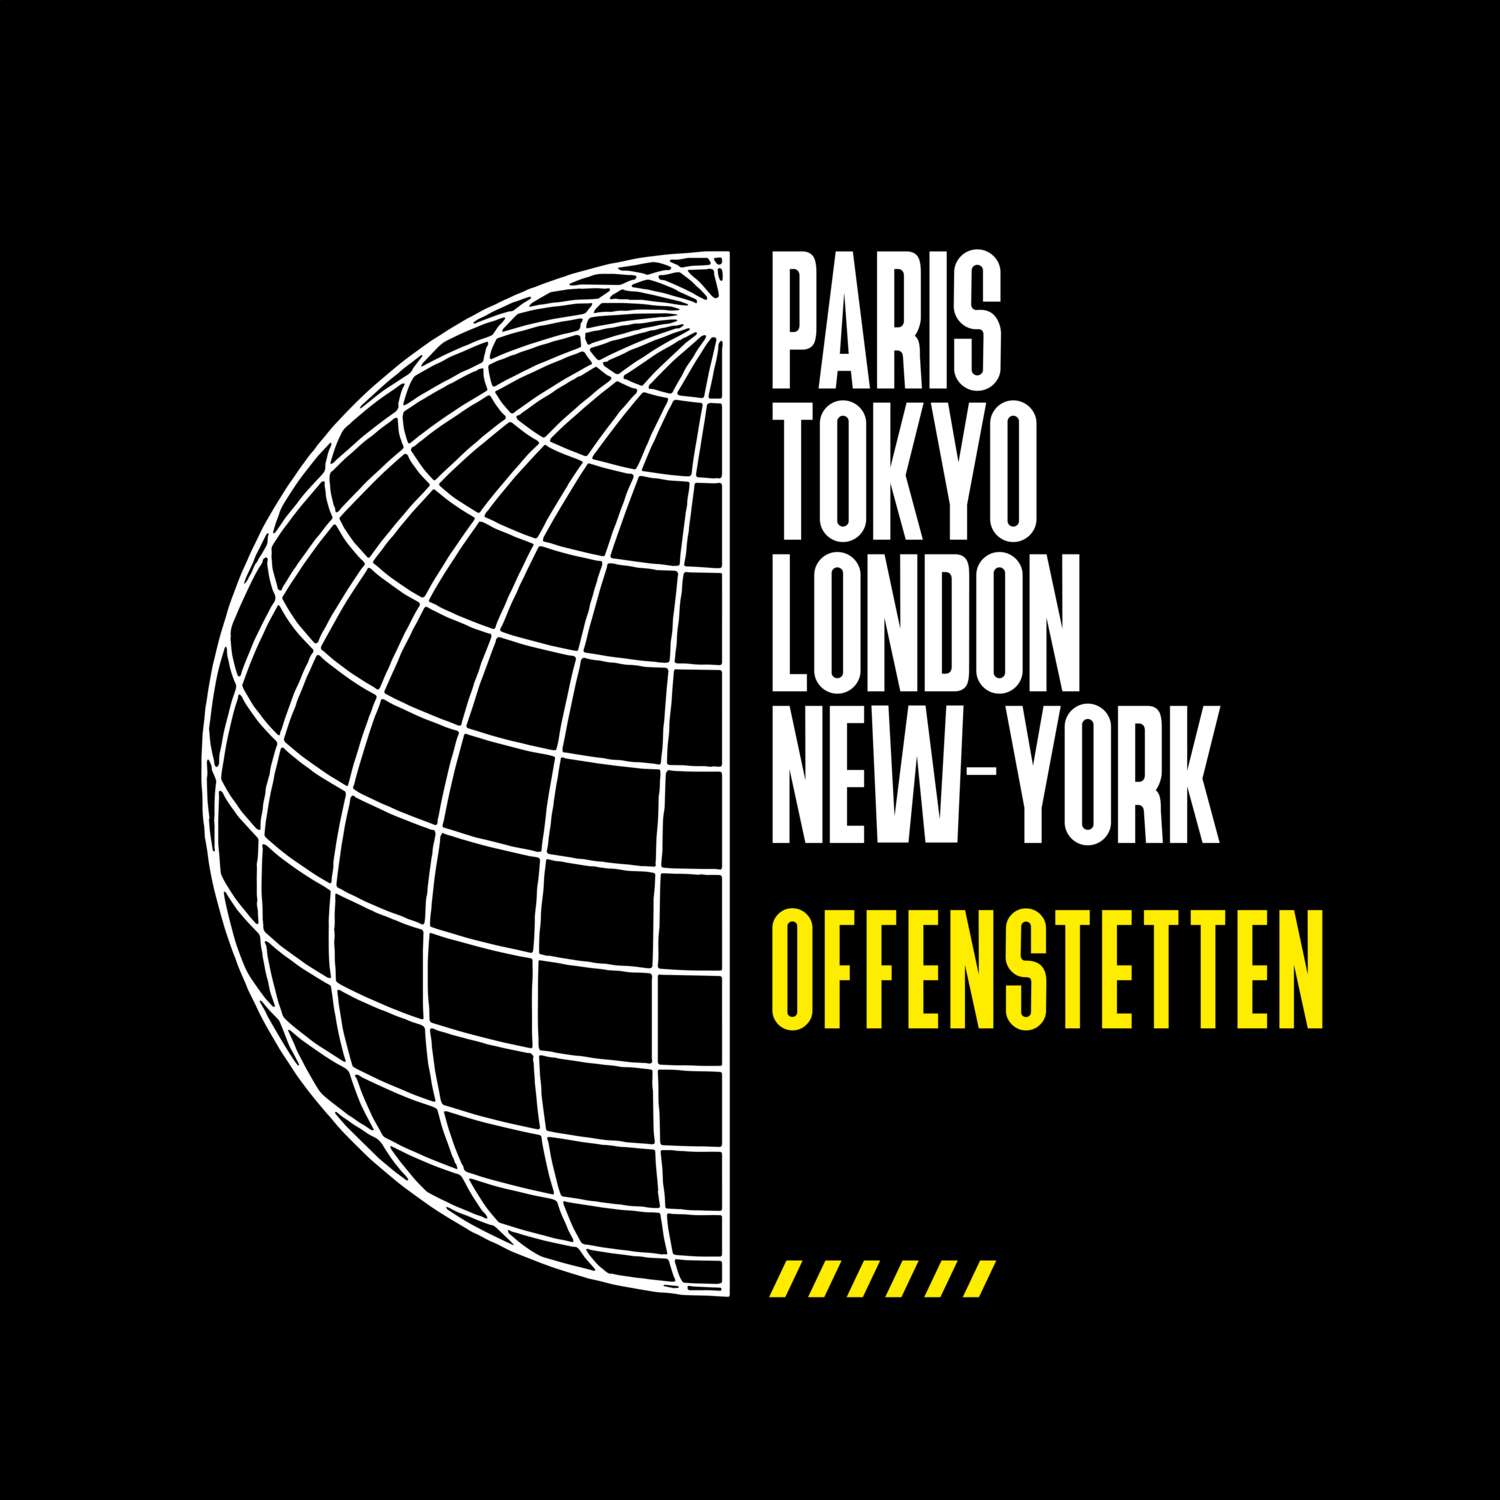 Offenstetten T-Shirt »Paris Tokyo London«